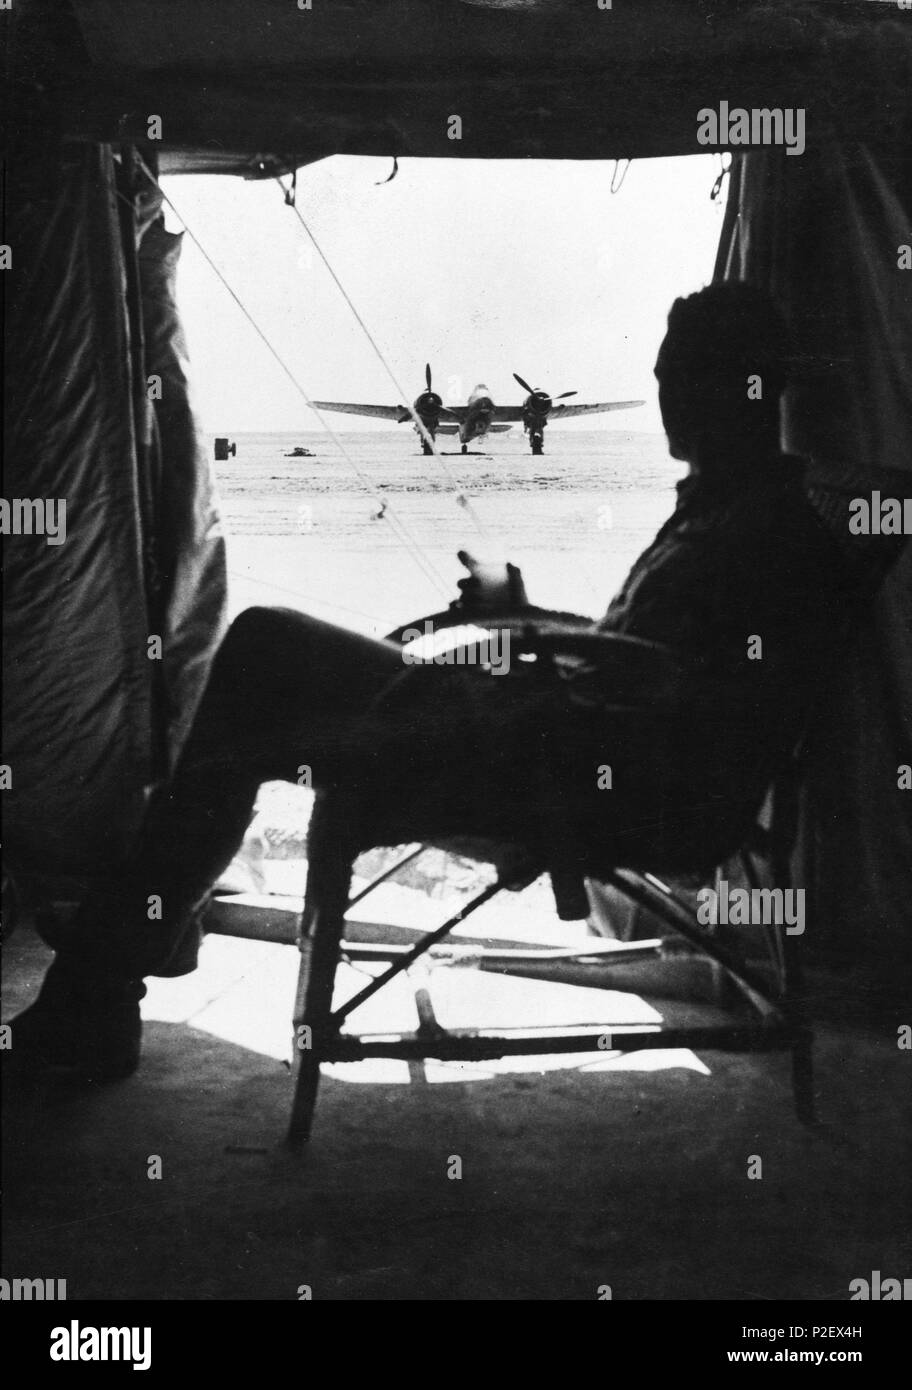 Piloto aliado observando su avión en el norte de África. Stock Photo